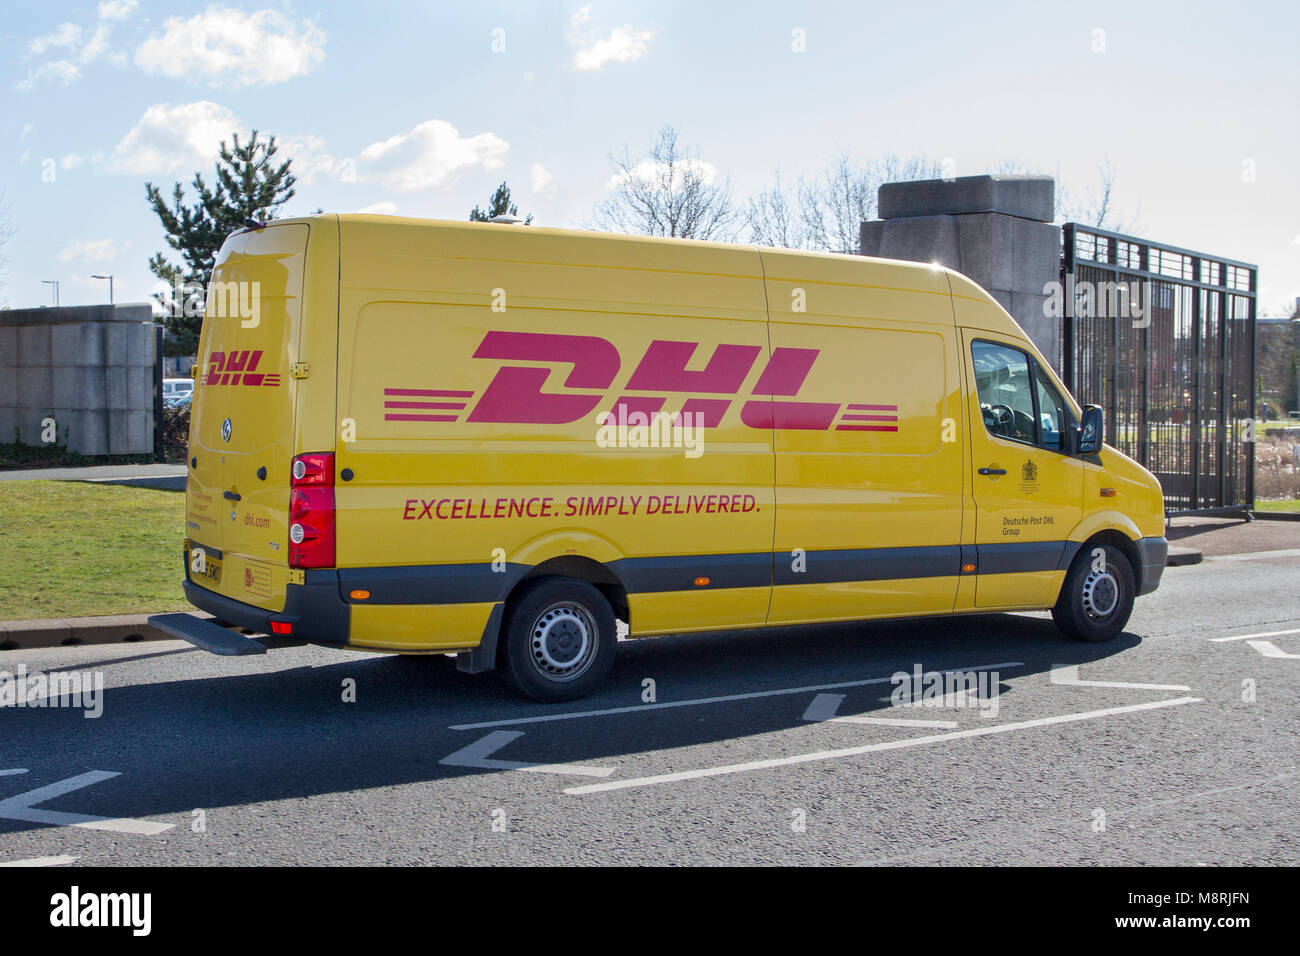 DHL Express logística de la empresa alemana Deutsche Post DHL prestan  servicios internacionales de mensajería y paquetería, servicios de correo  expreso, logística y transporte en Liverpool, Merseyside, REINO UNIDO  Fotografía de stock -